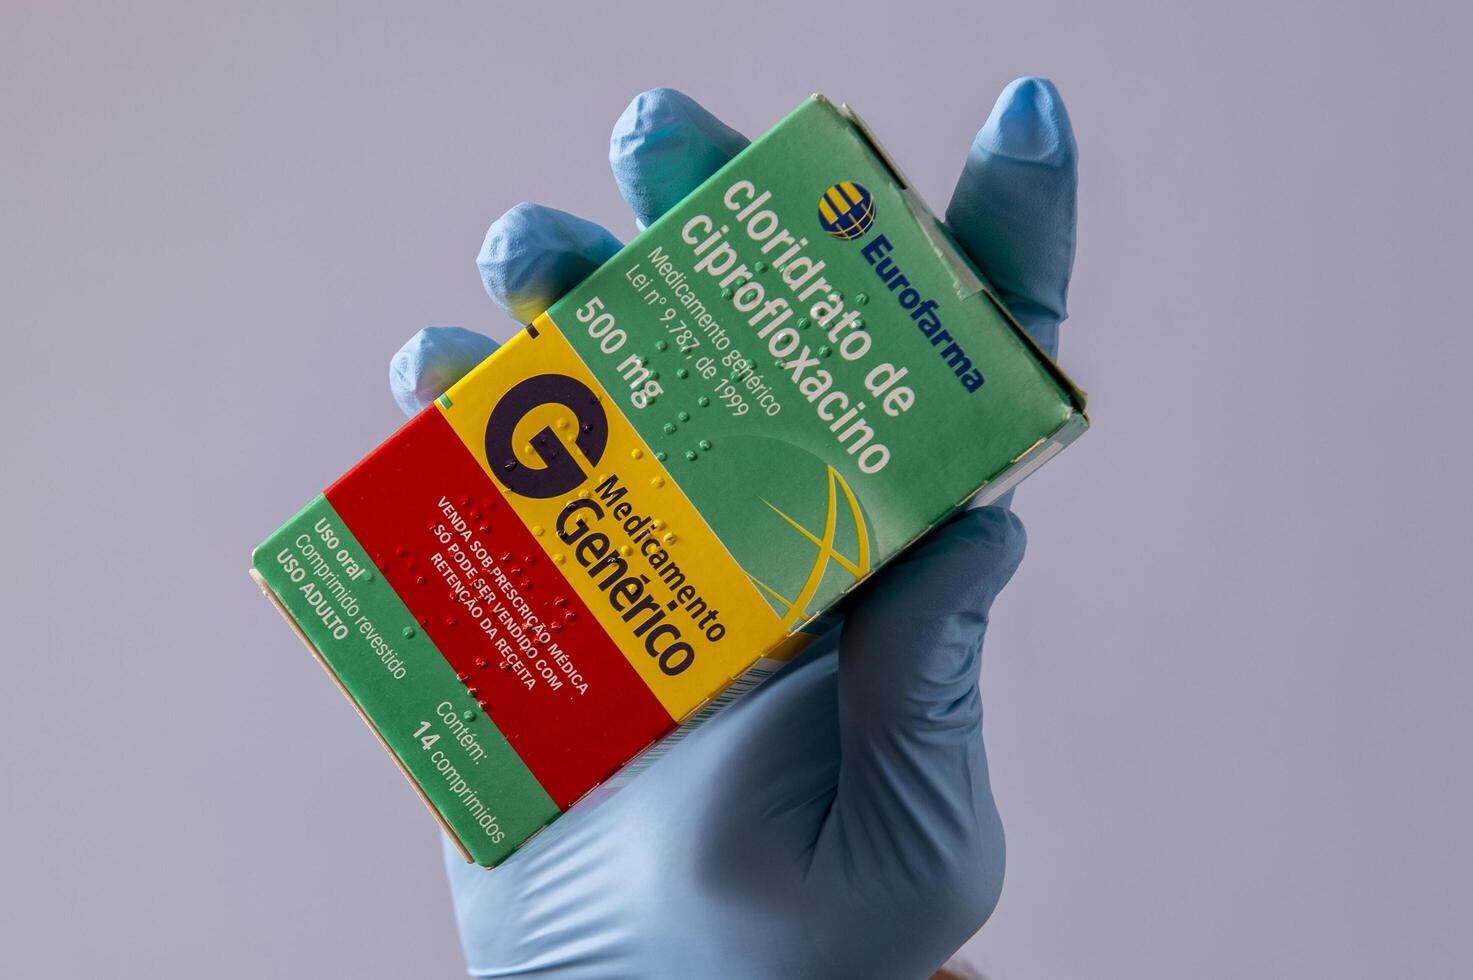 rio, brasilien - 27. januar 2023, hand mit schützendem gummihandschuh, der medikamentenbox hält, cipofloxacinhydrochlorid foto